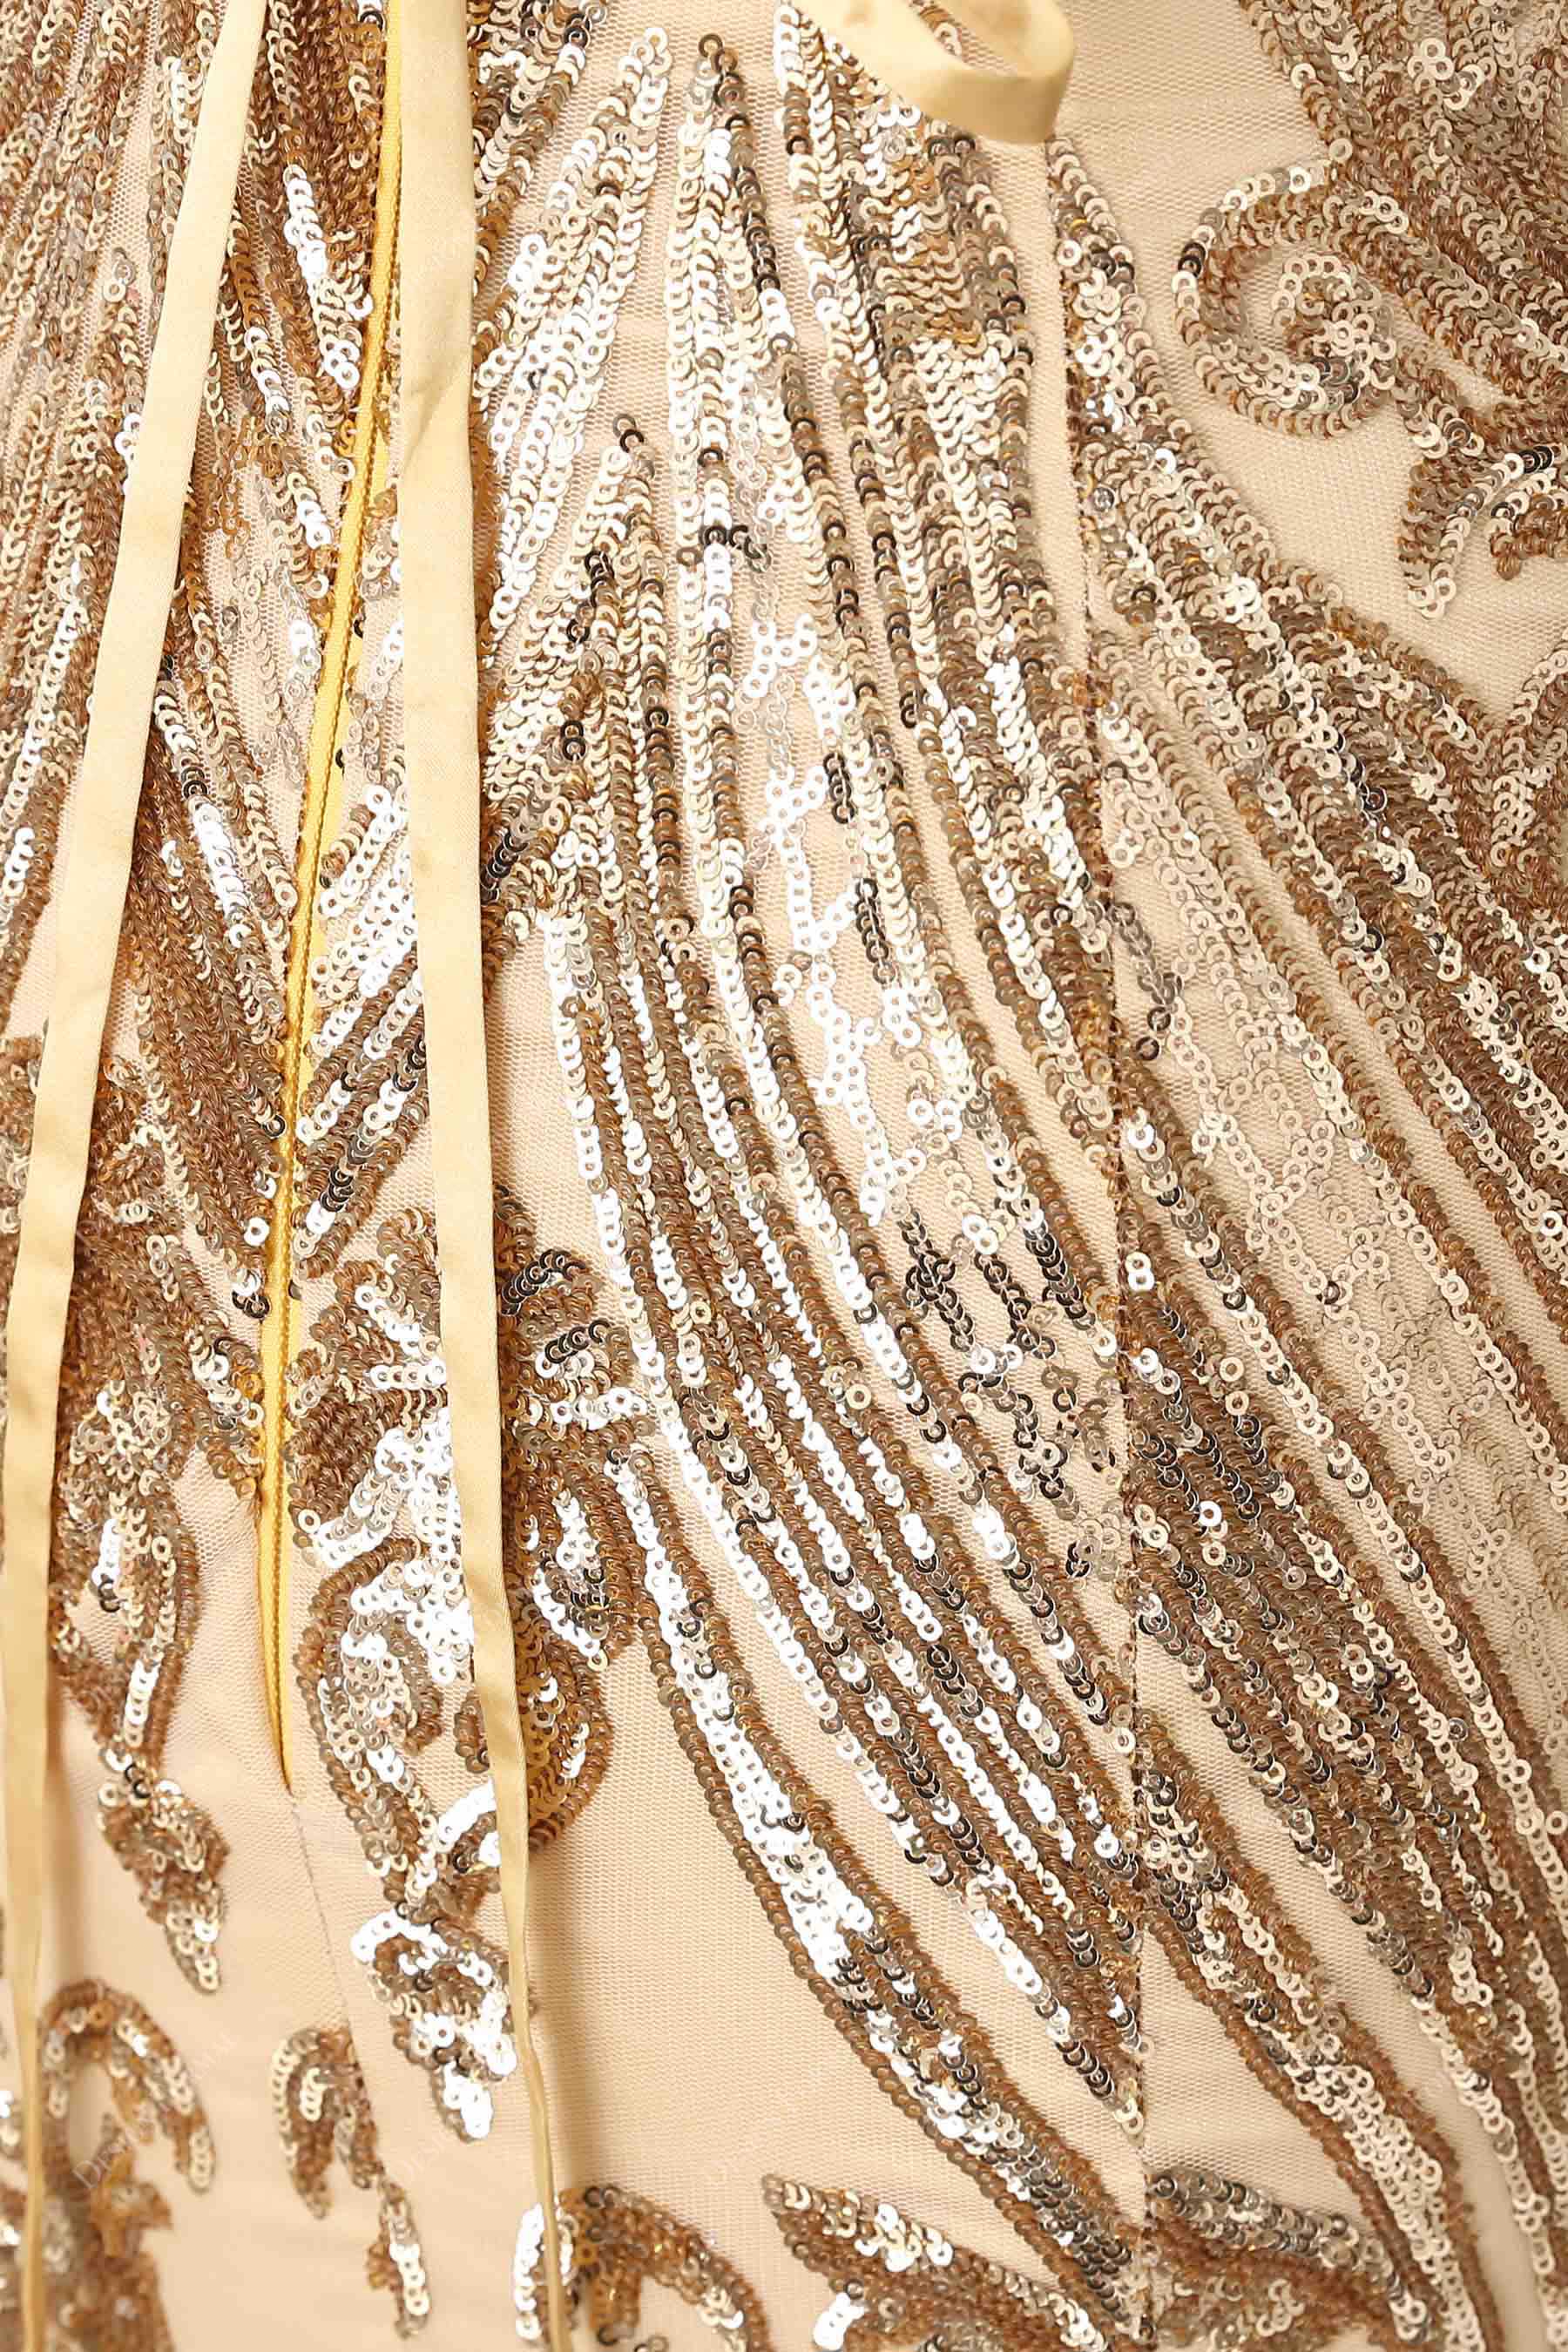 gold unique sequin patterns